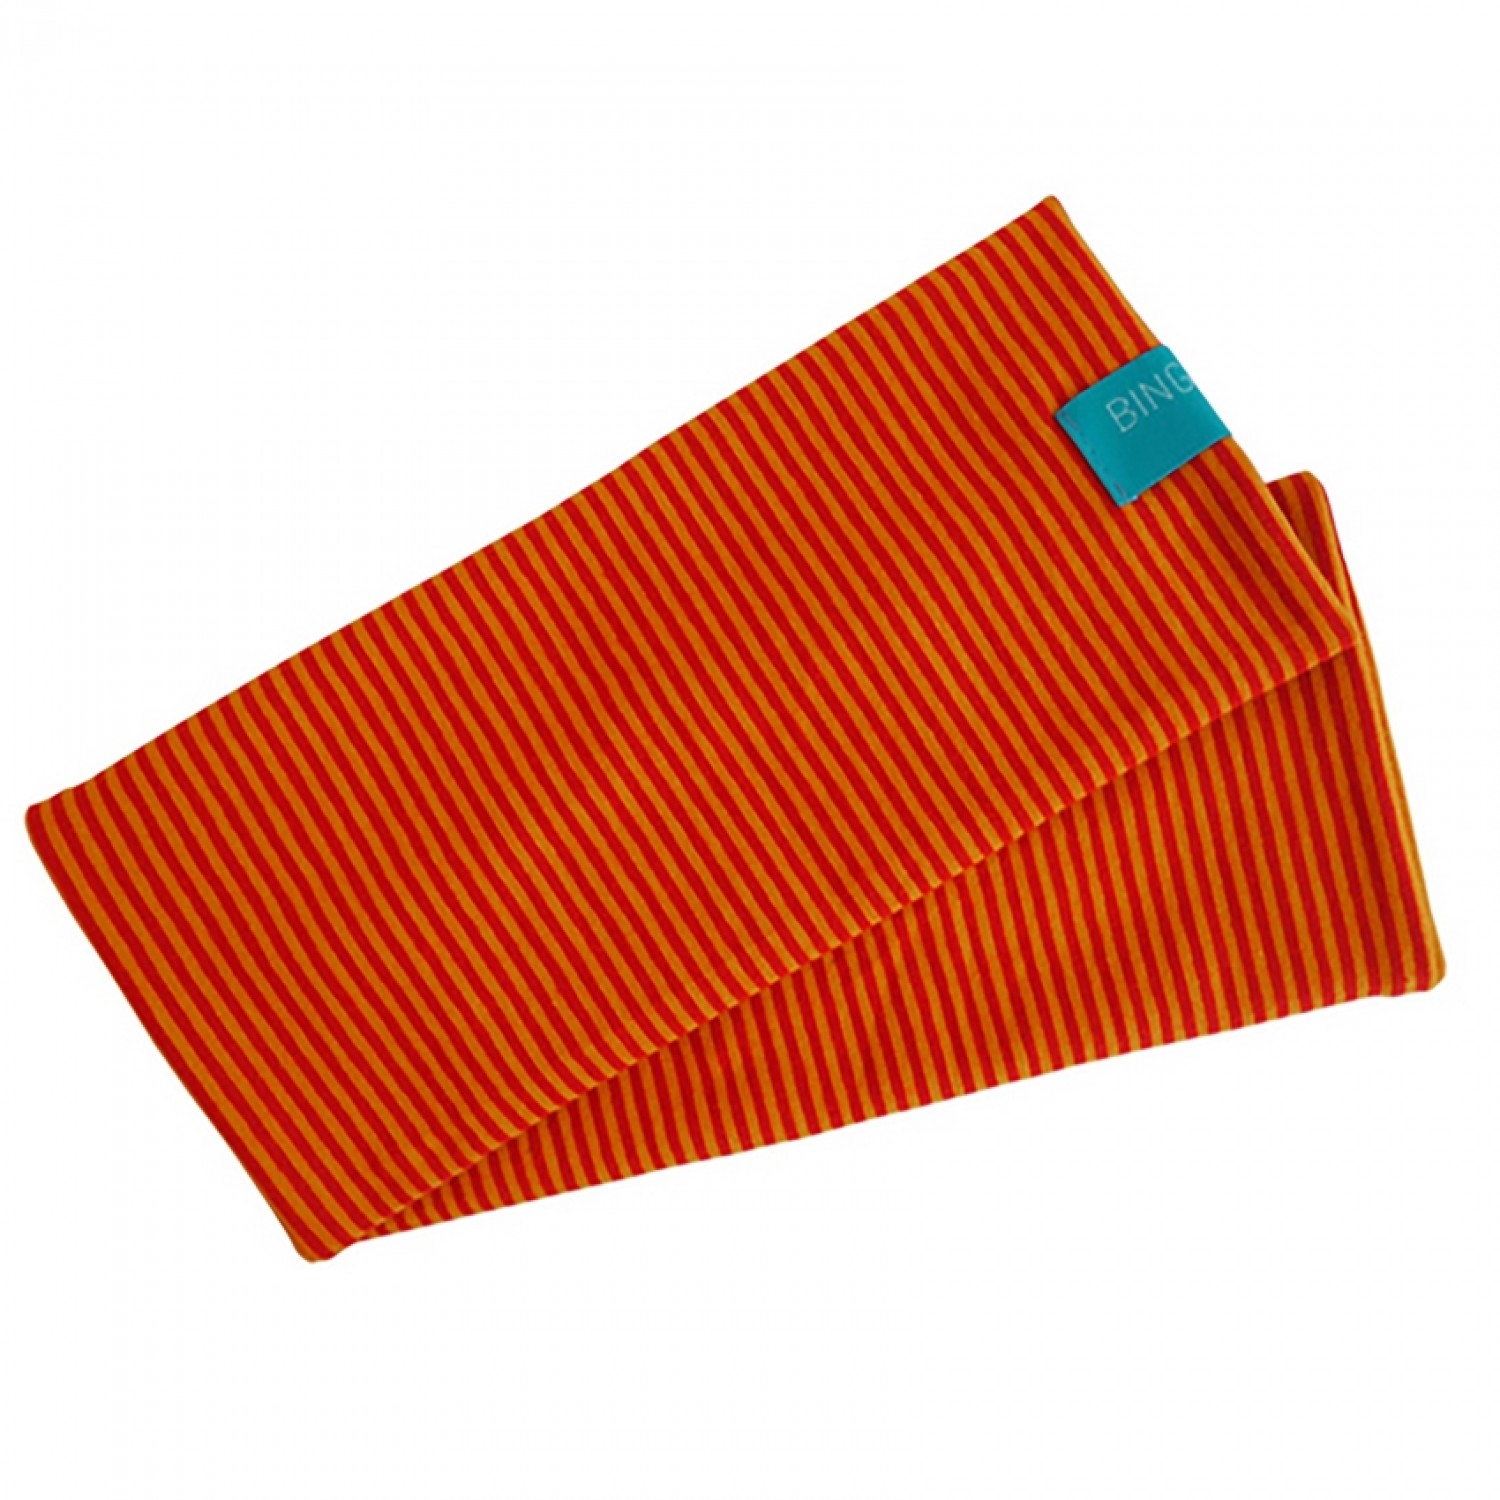 Fingerless Sleeves Striped Pattern organic cotton Red/Yellow | bingabonga